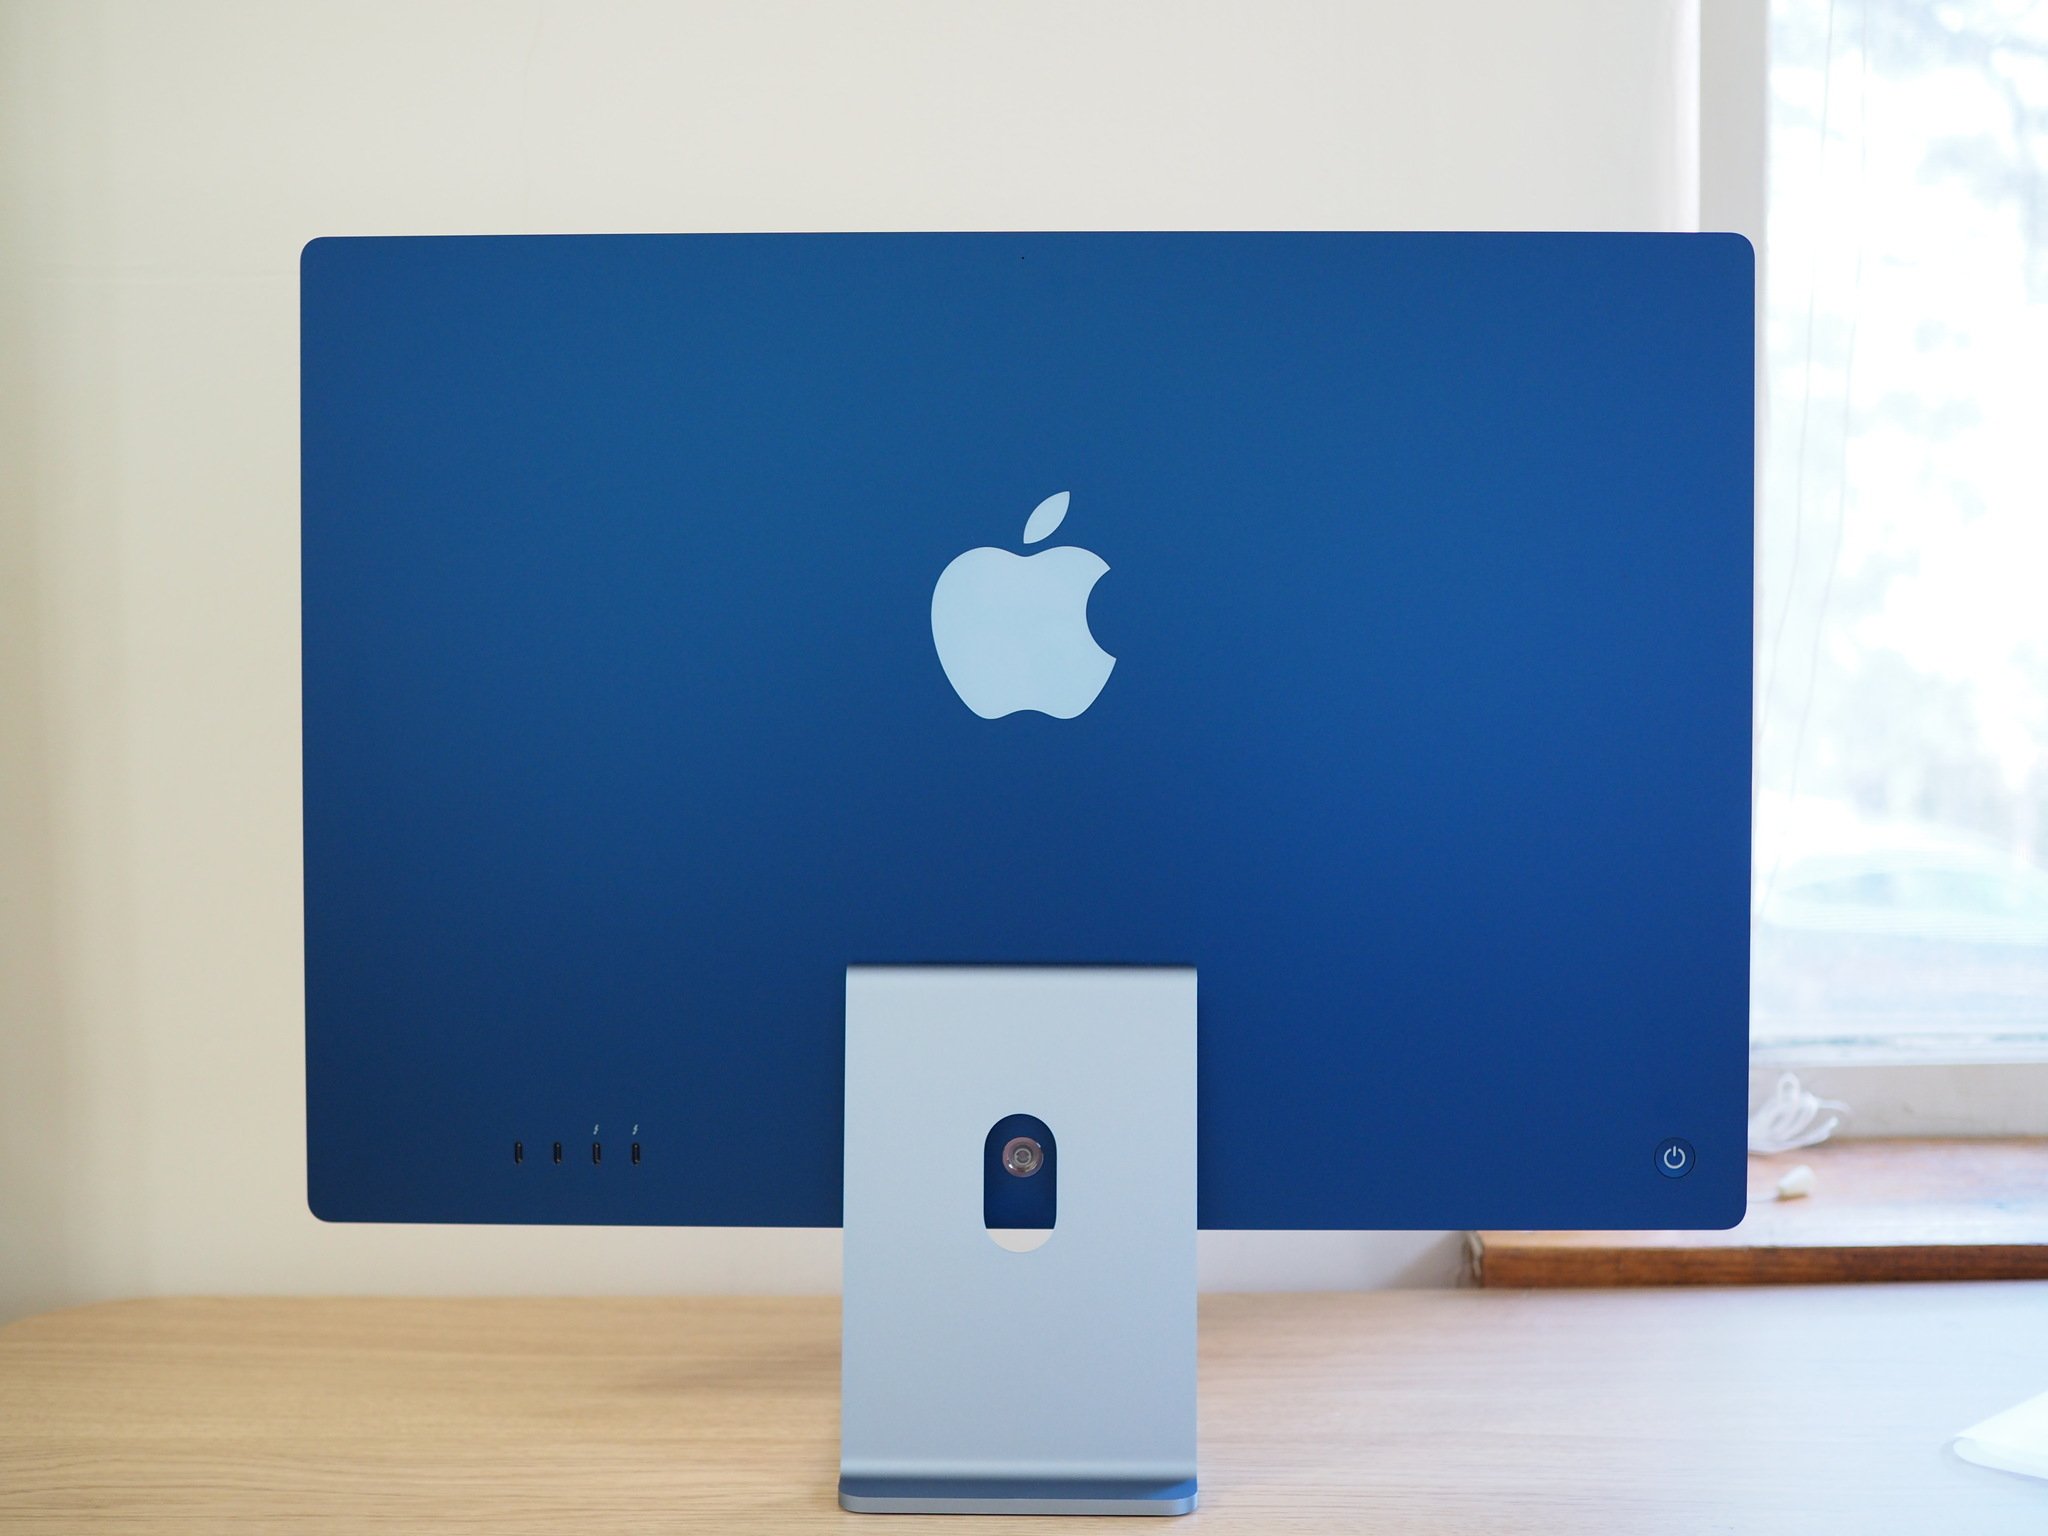 24-inch iMac in blue